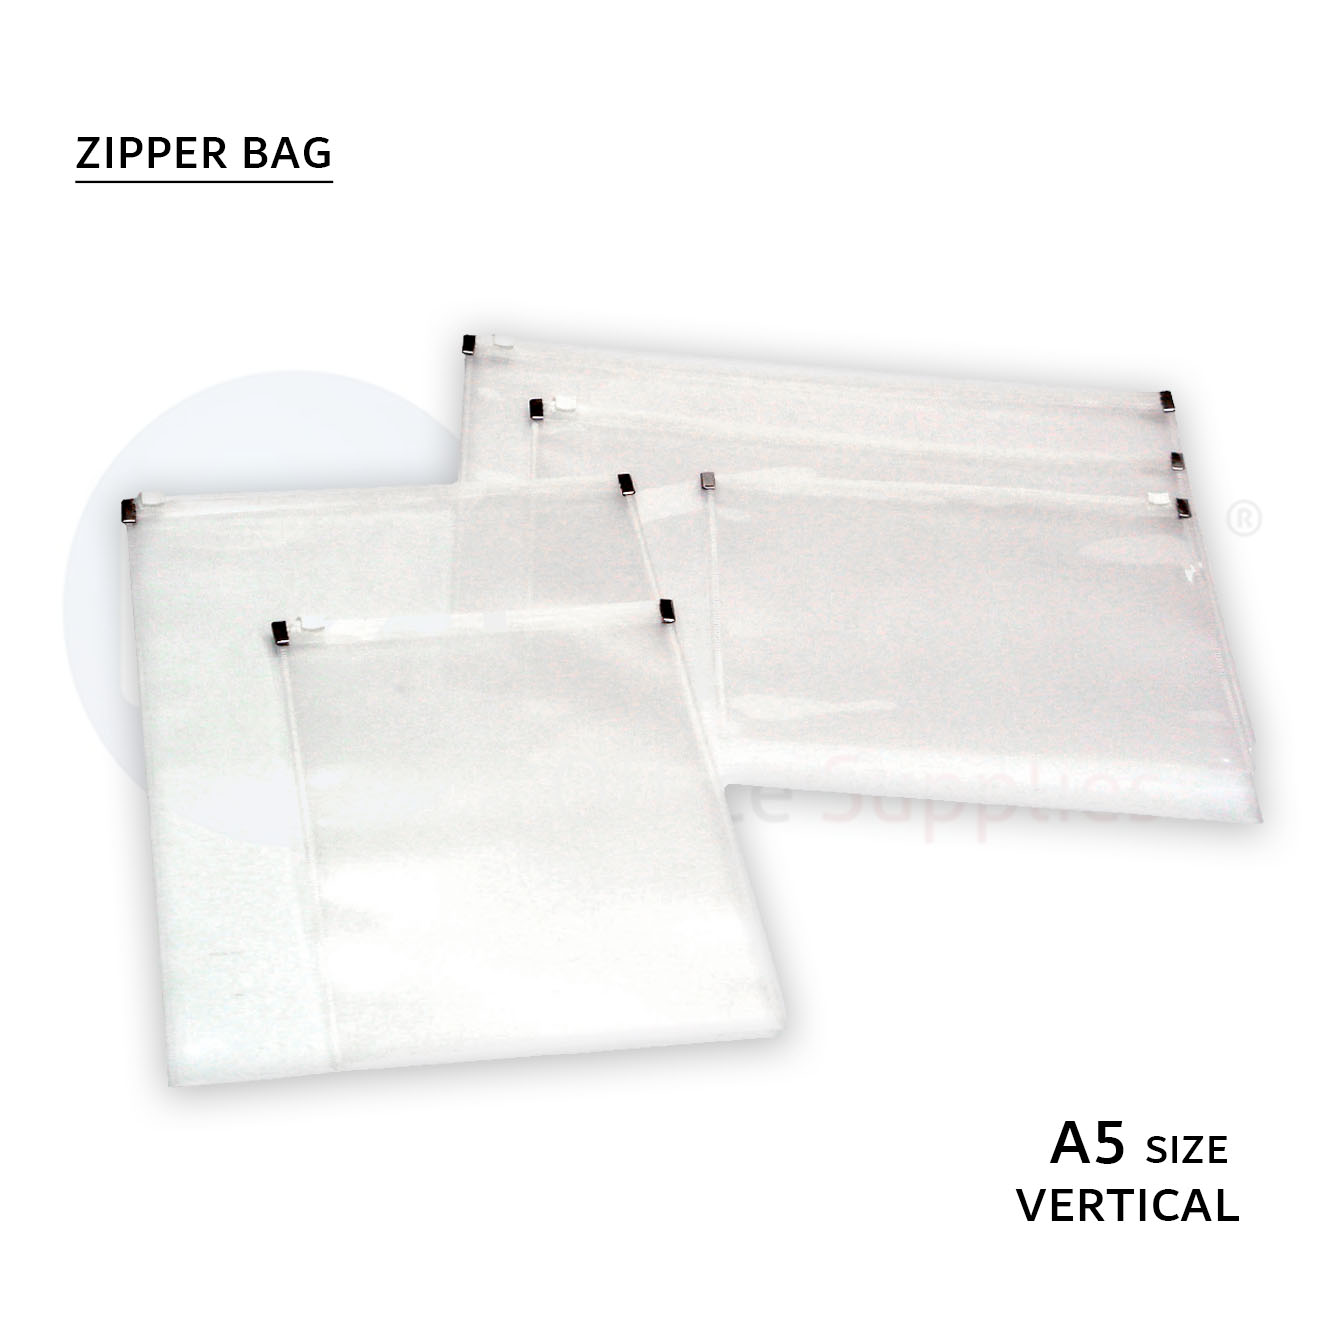 Zipper bag,vertical, A5 size